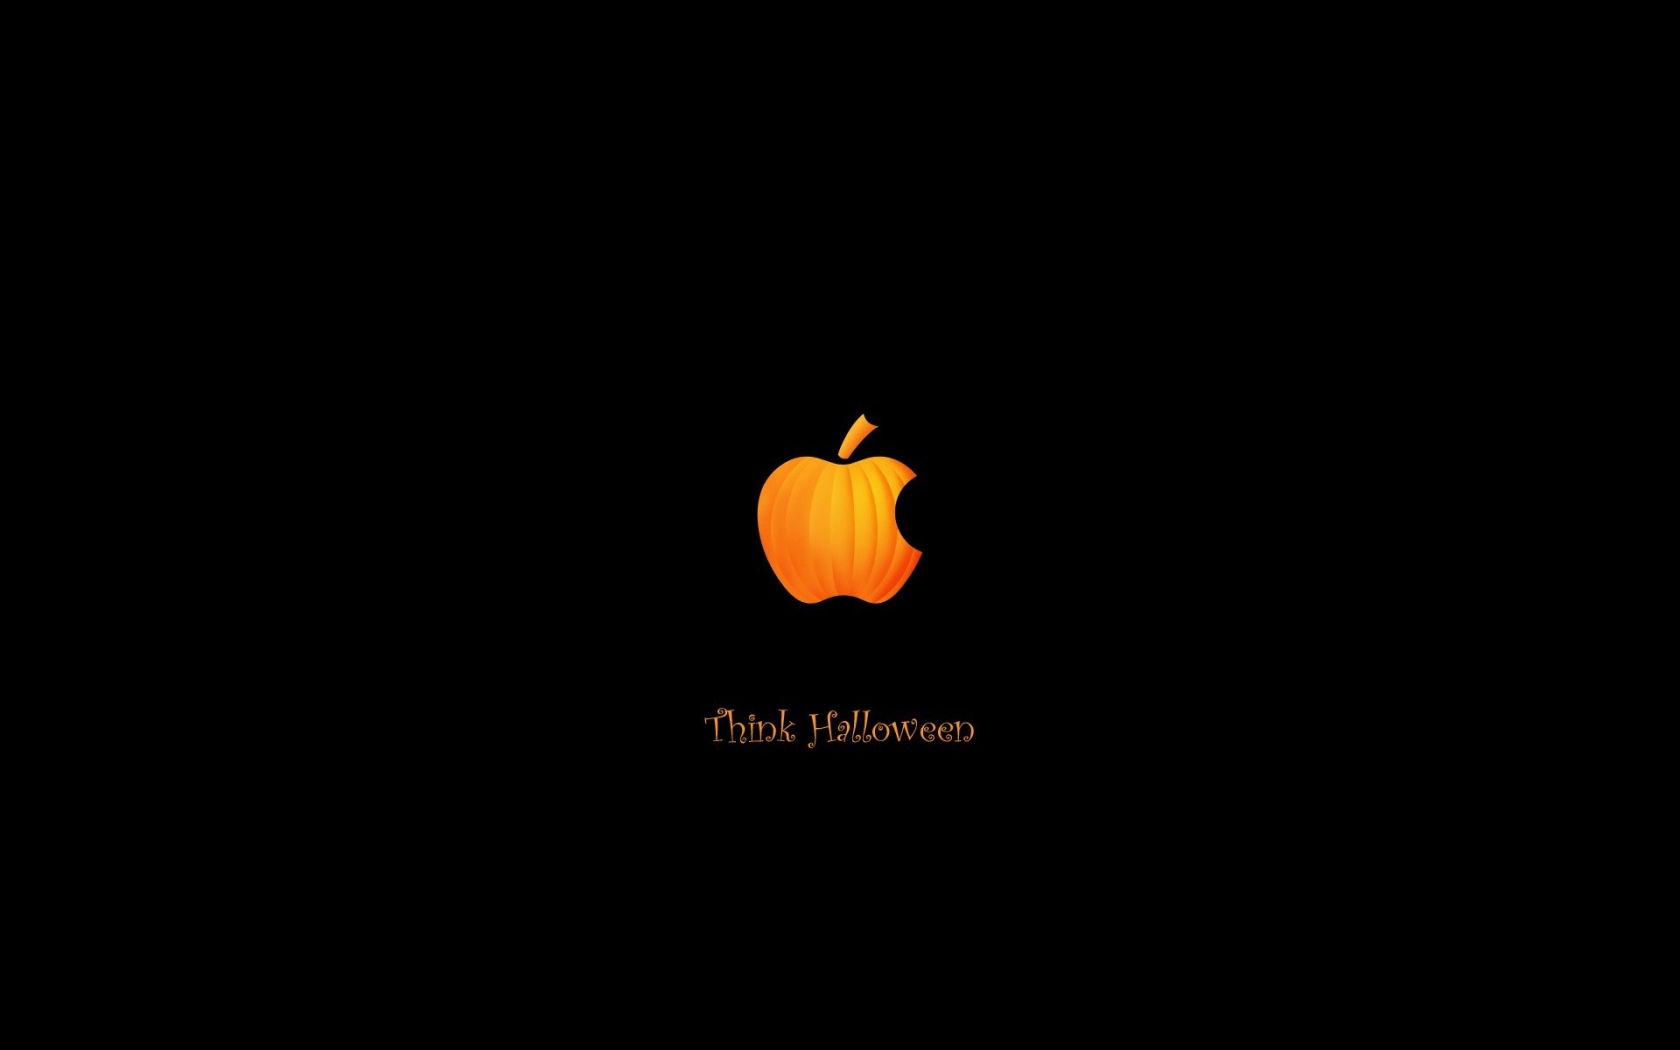 Pumpkin Apple for 1680 x 1050 widescreen resolution